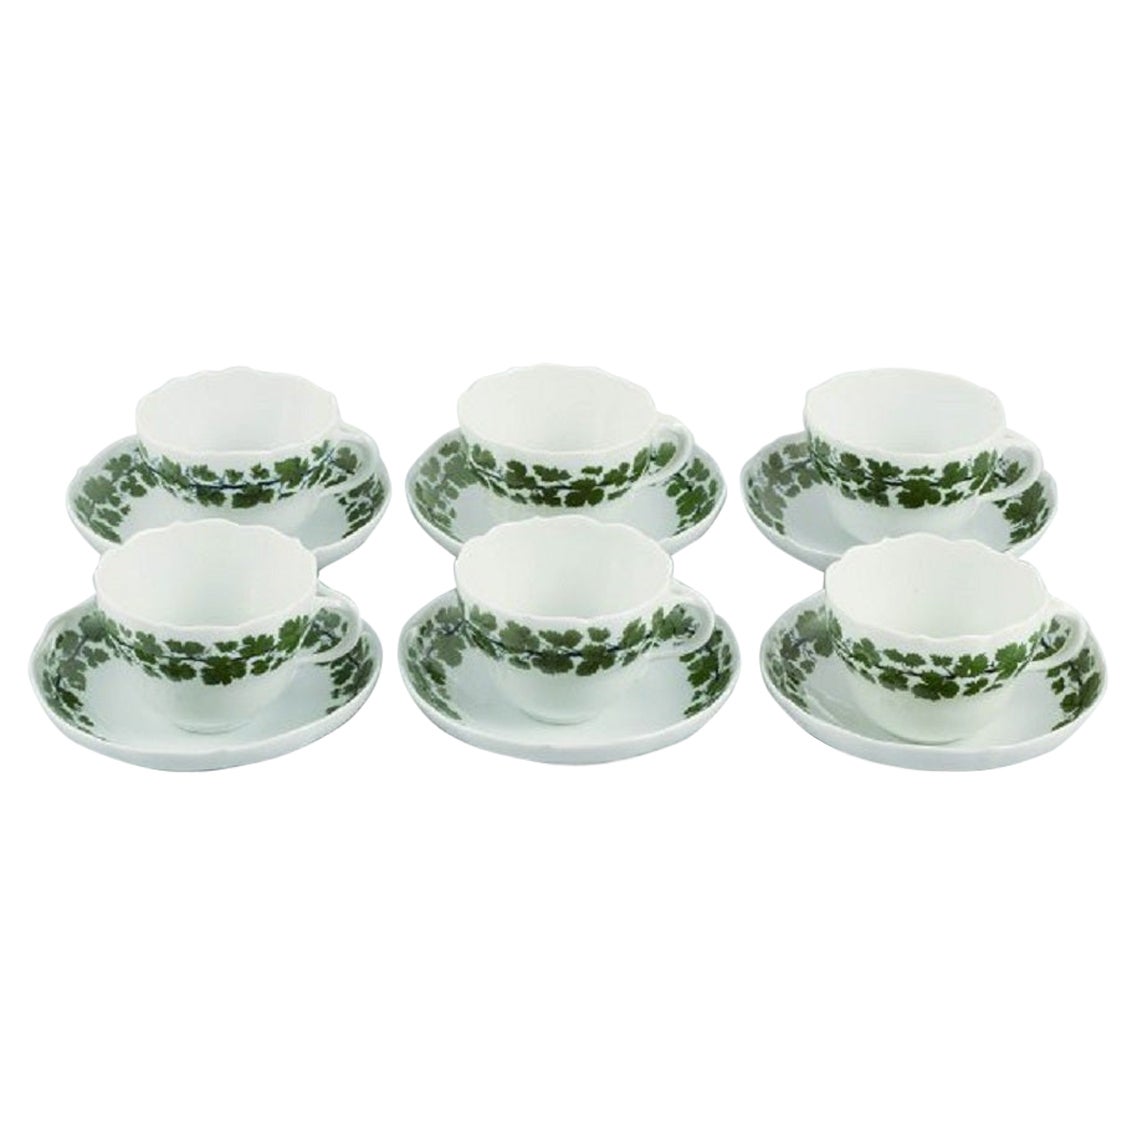 Six tasses à café Meissen vert lierre à feuilles de vigne avec soucoupes en porcelaine